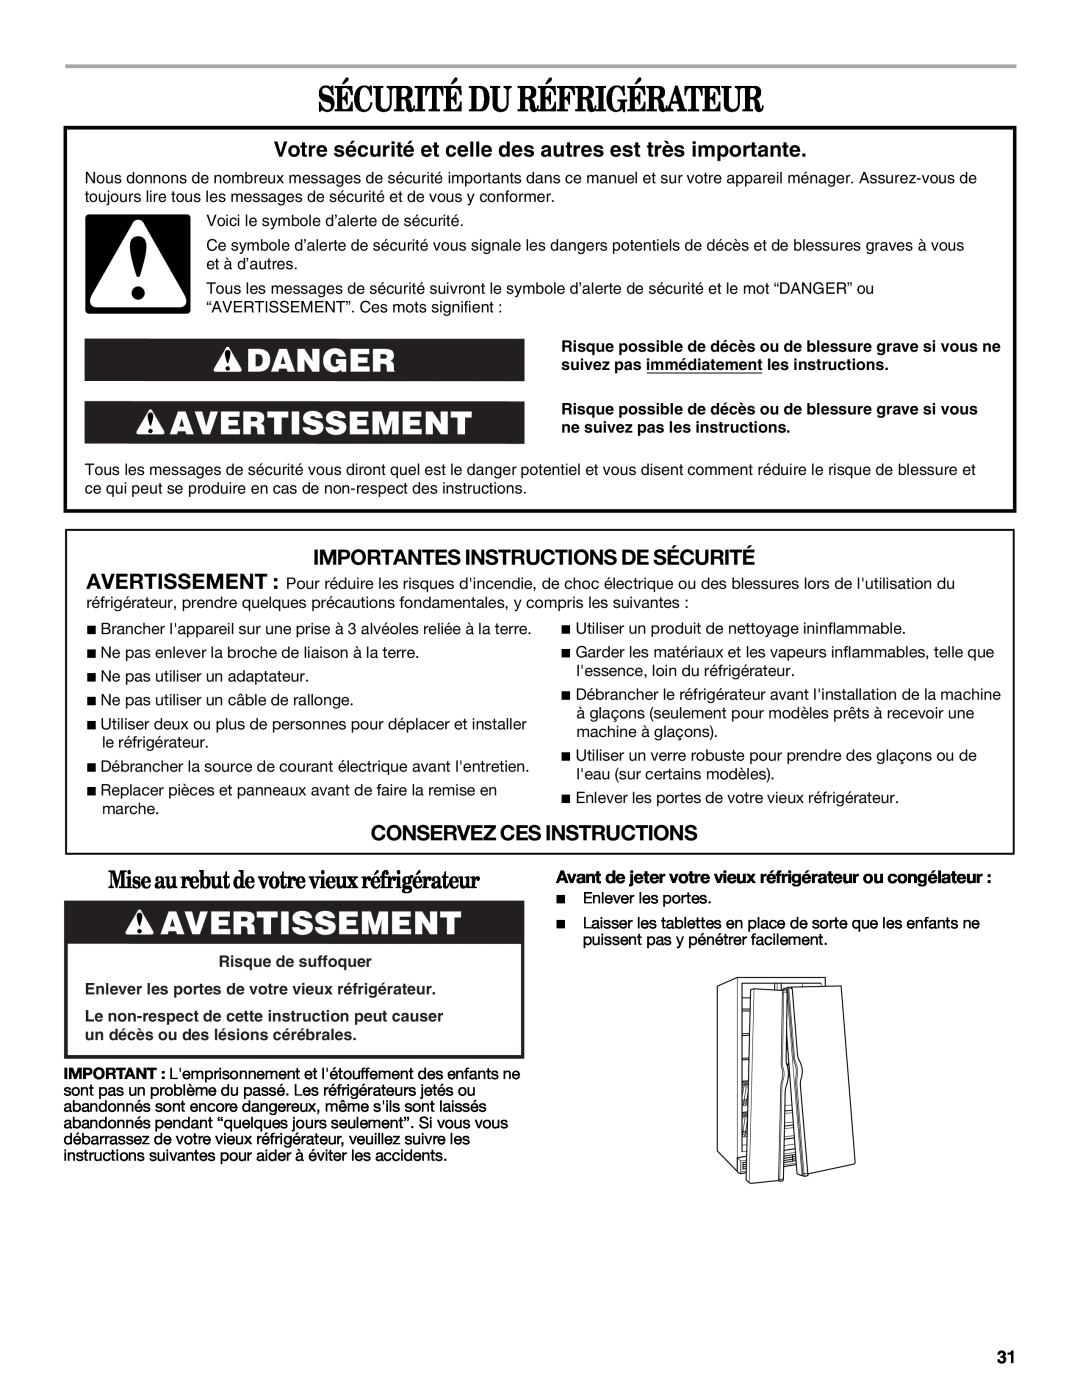 Whirlpool 2315209 warranty Sécurité Du Réfrigérateur, Danger Avertissement, Miseau rebutdevotrevieuxréfrigérateur 